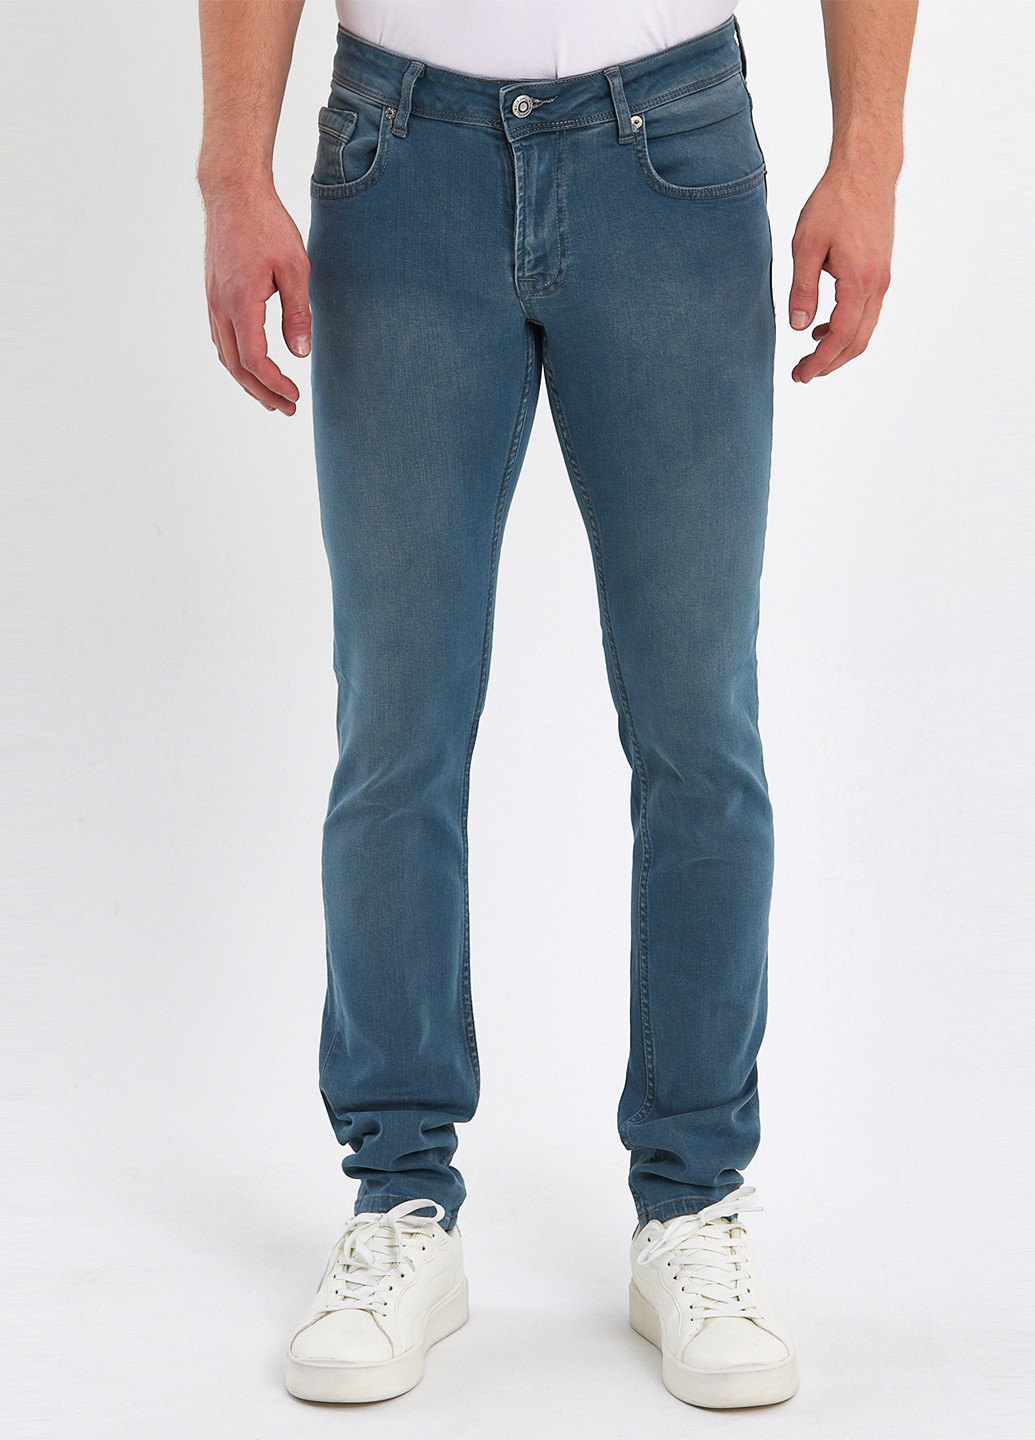 Голубые демисезонные зауженные джинсы Trend Collection